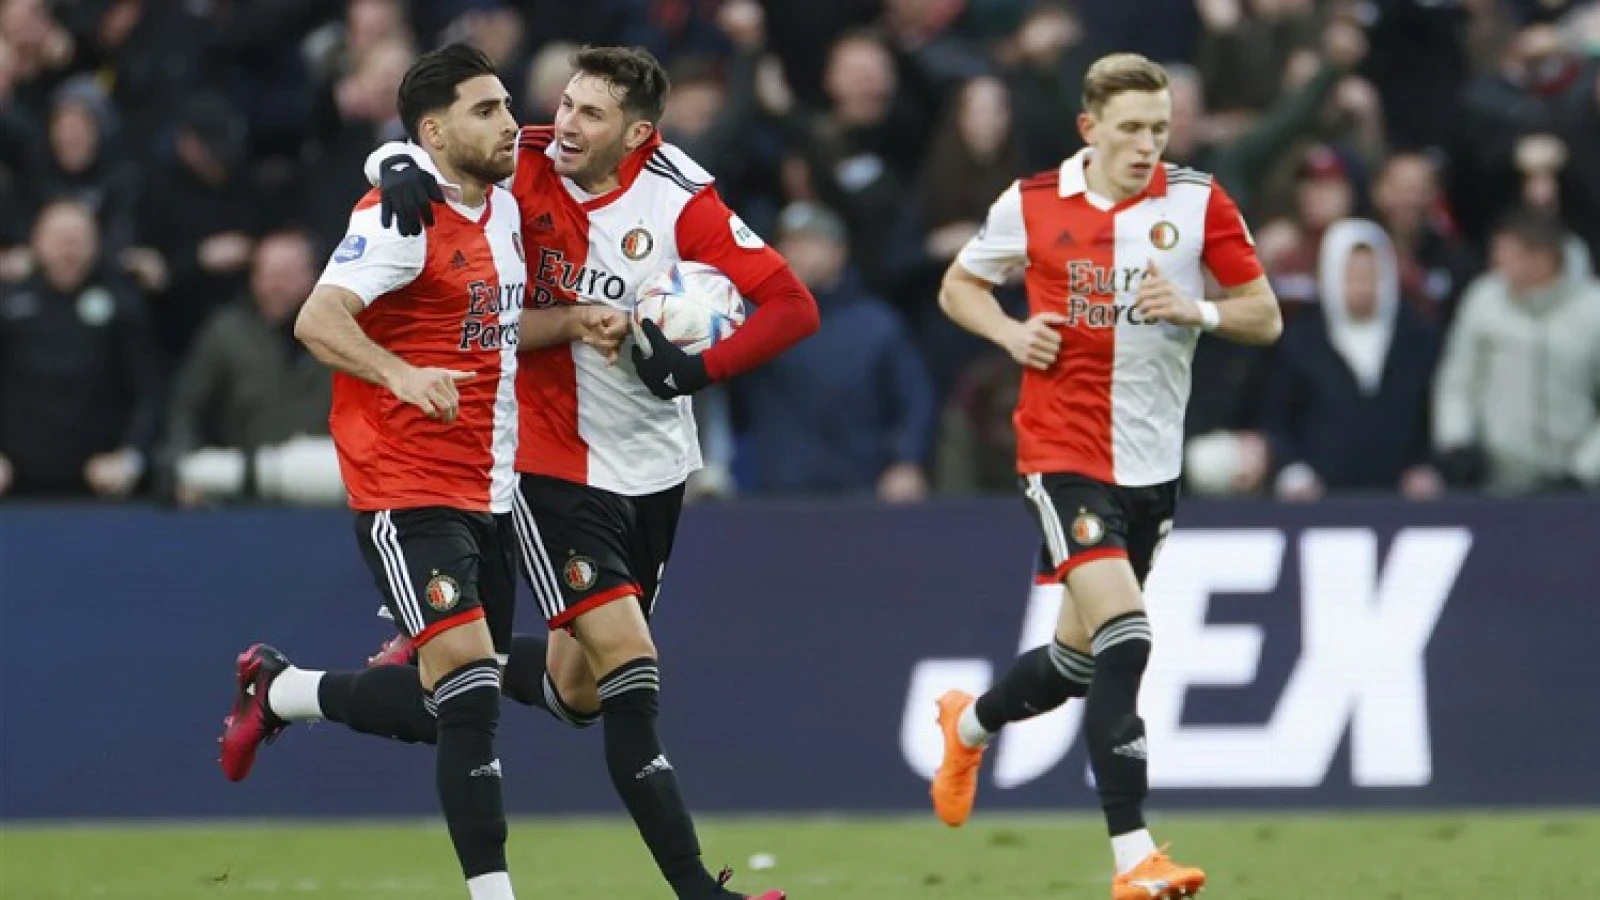 SAMENVATTING | Feyenoord - PSV 2-2